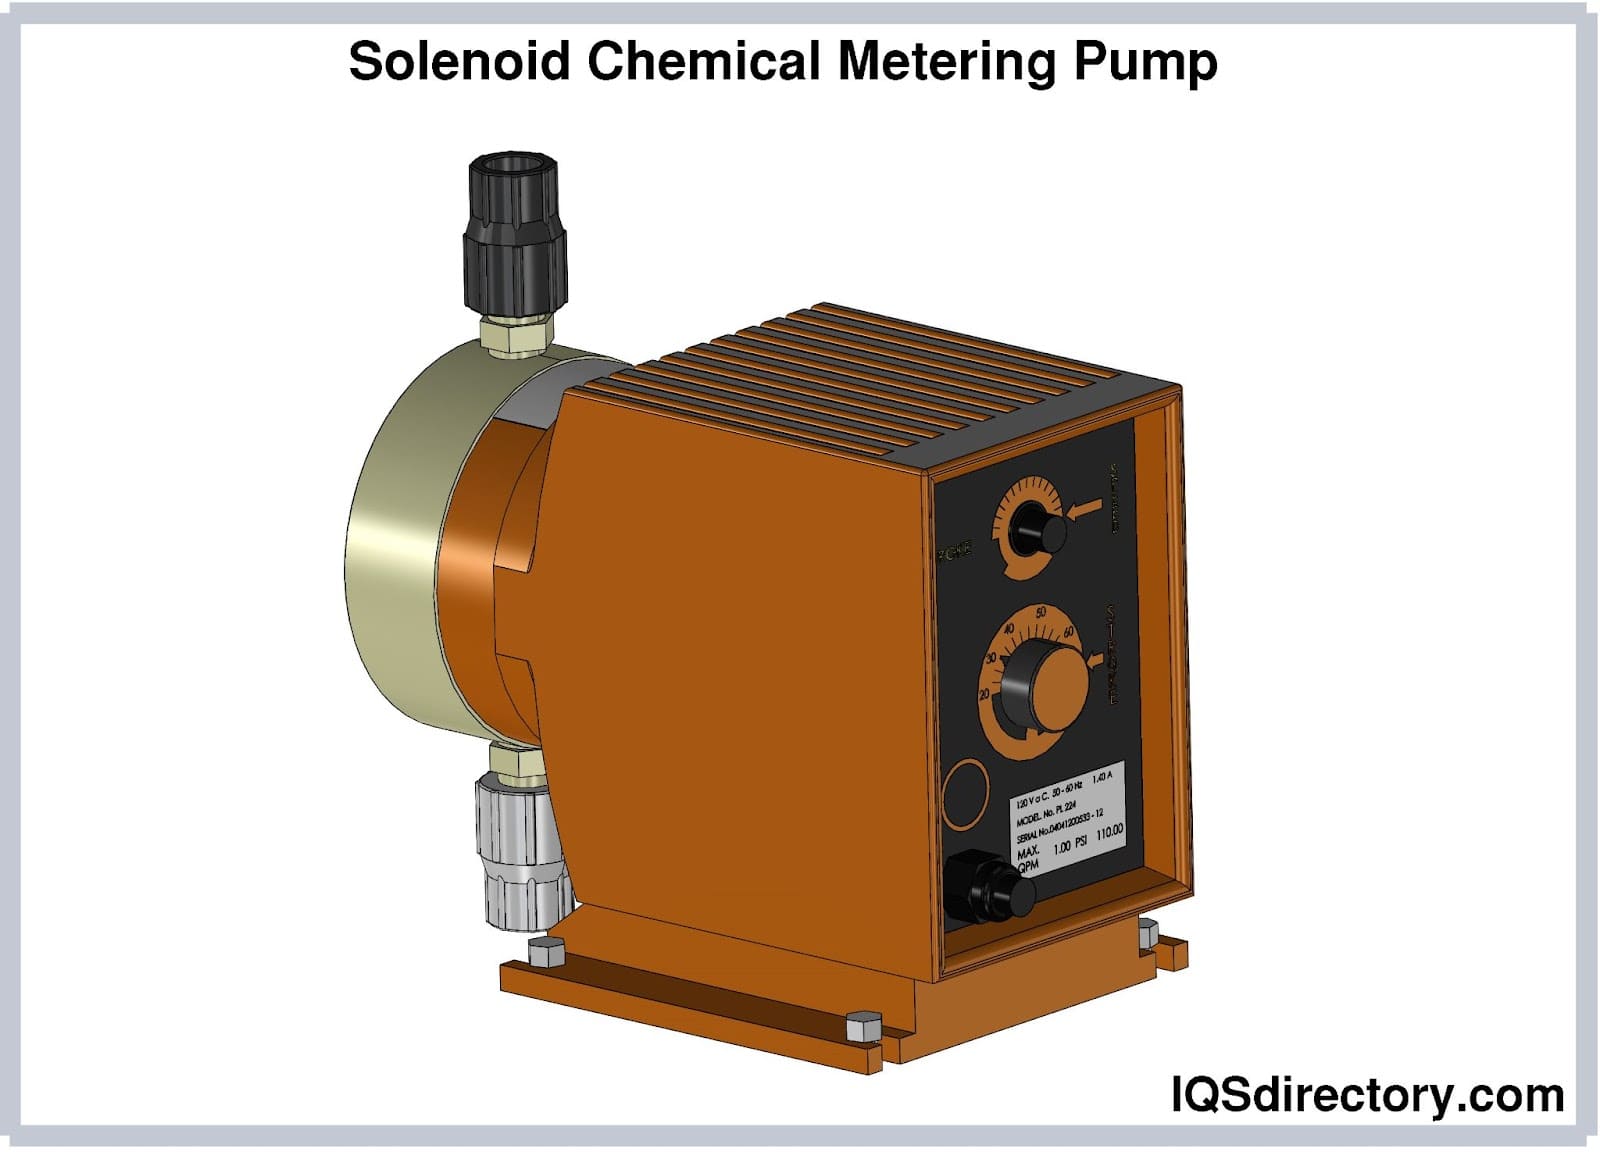 Solenoid Chemical Metering Pump